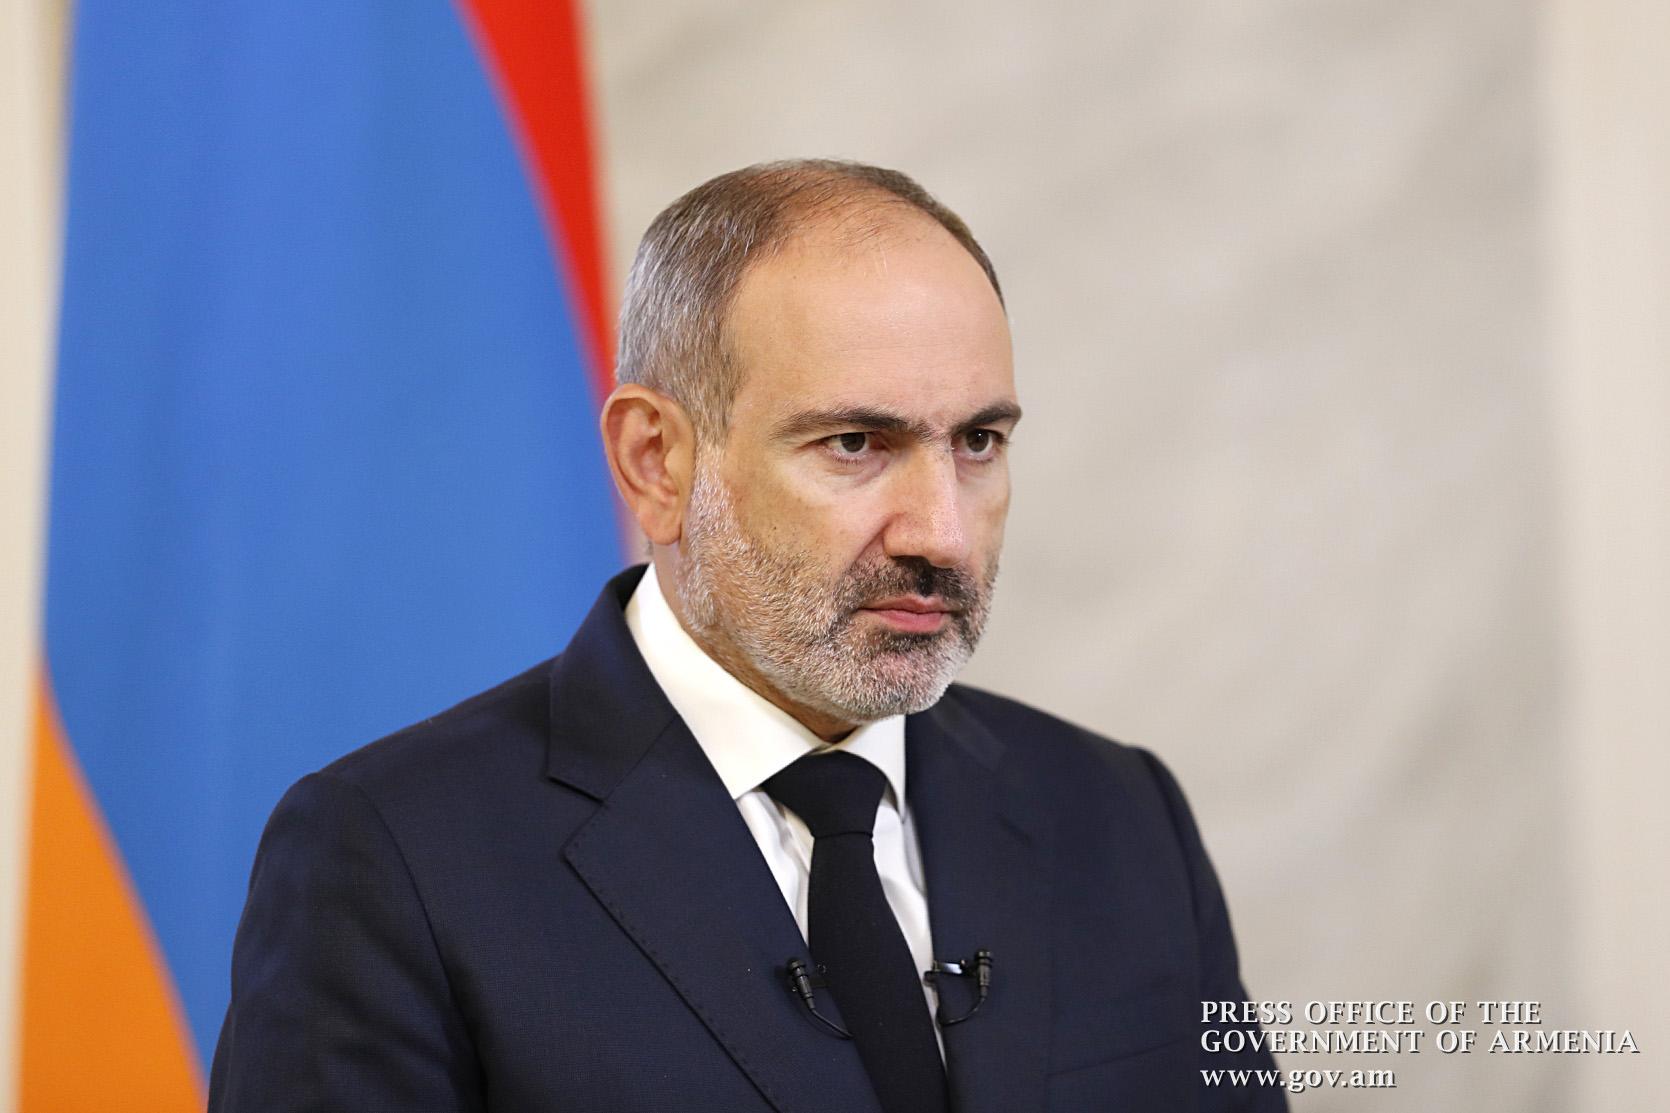 Пашинян: Цель азербайджано-турецких бандитских группировок – продолжить политику Геноцида армян